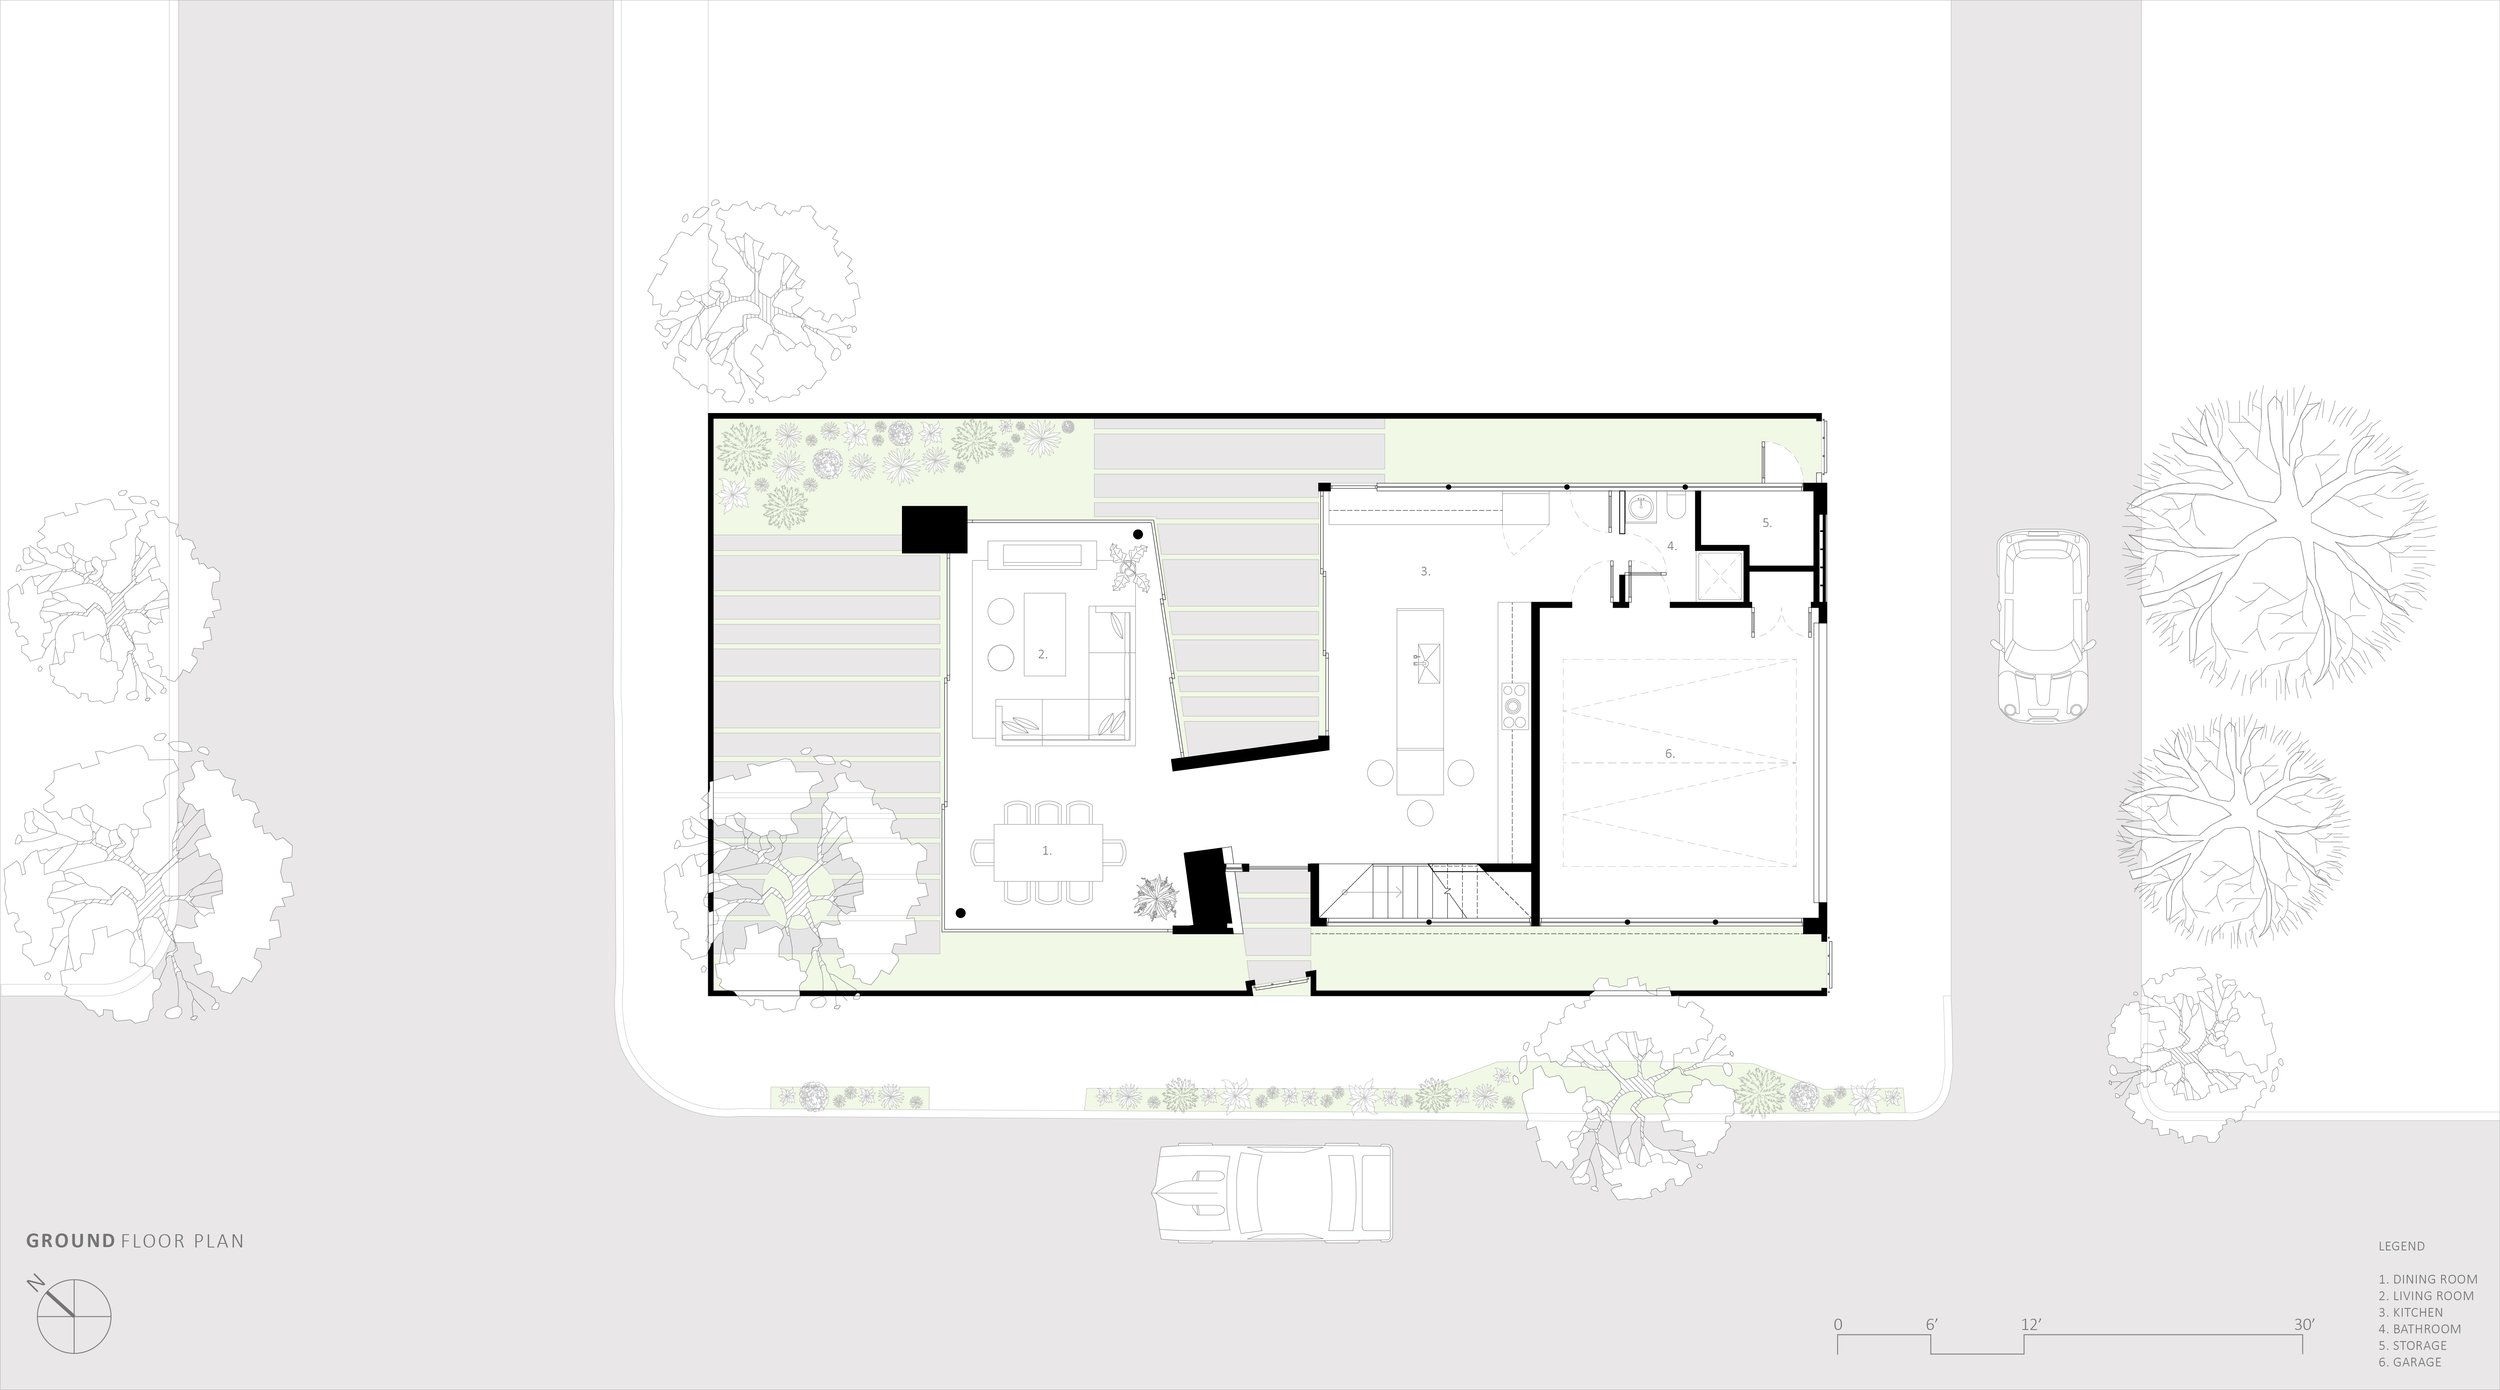 bspk-design-architecture-california-2600-residenital-spiral house-ground level floor plan.jpg